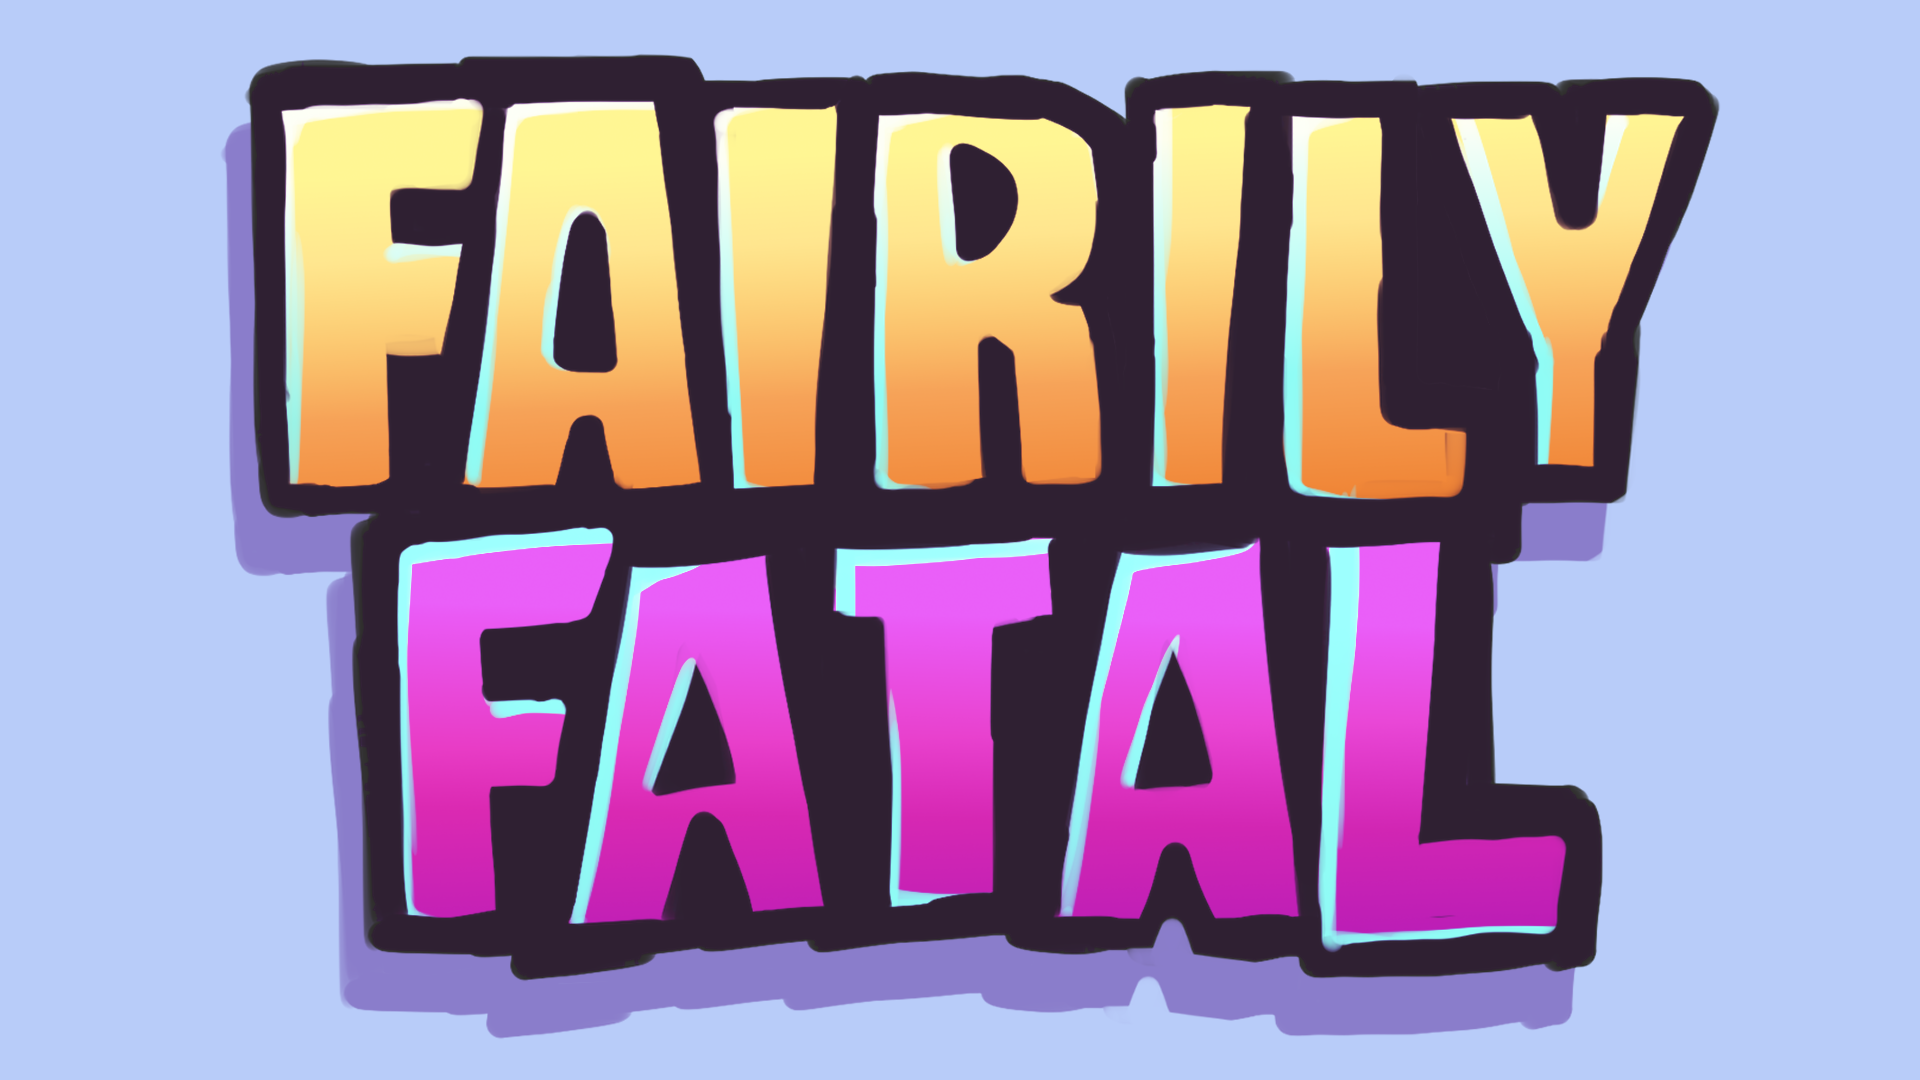 Fairily Fatal